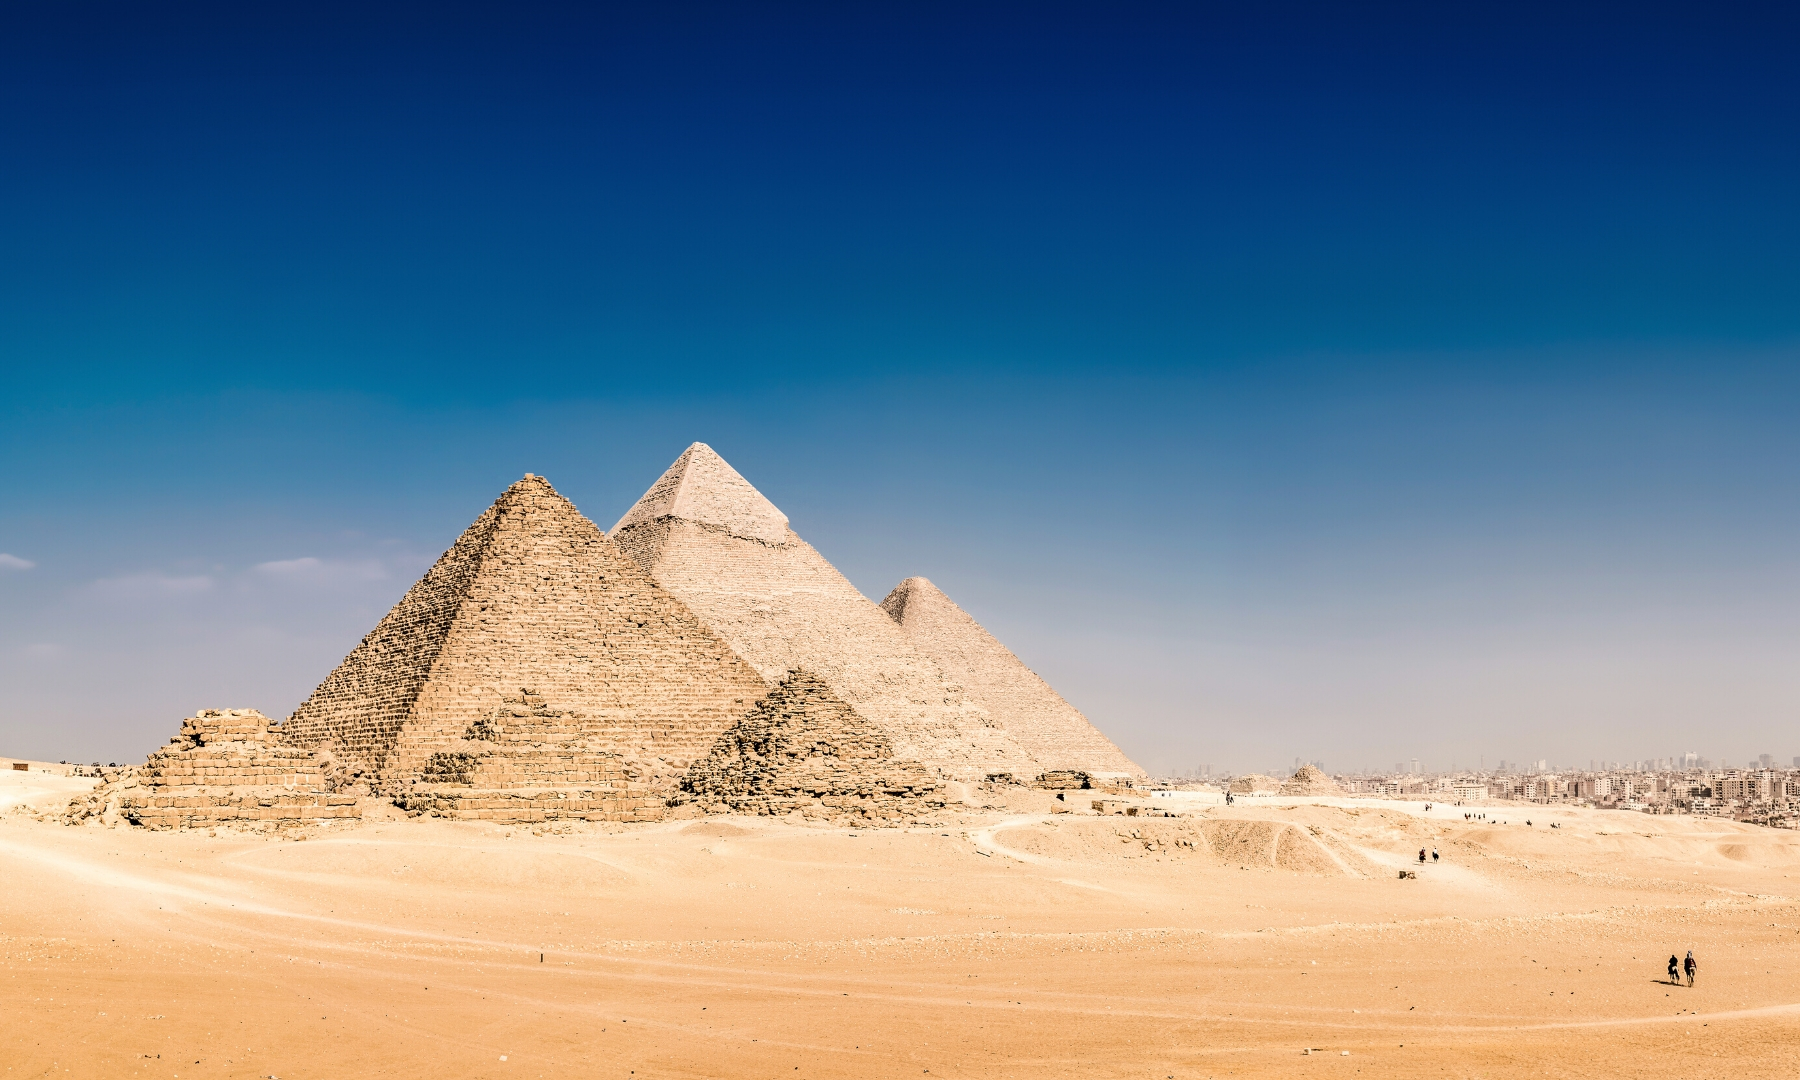 The Great Pyramids Giza Egypt Souvenir Patch 